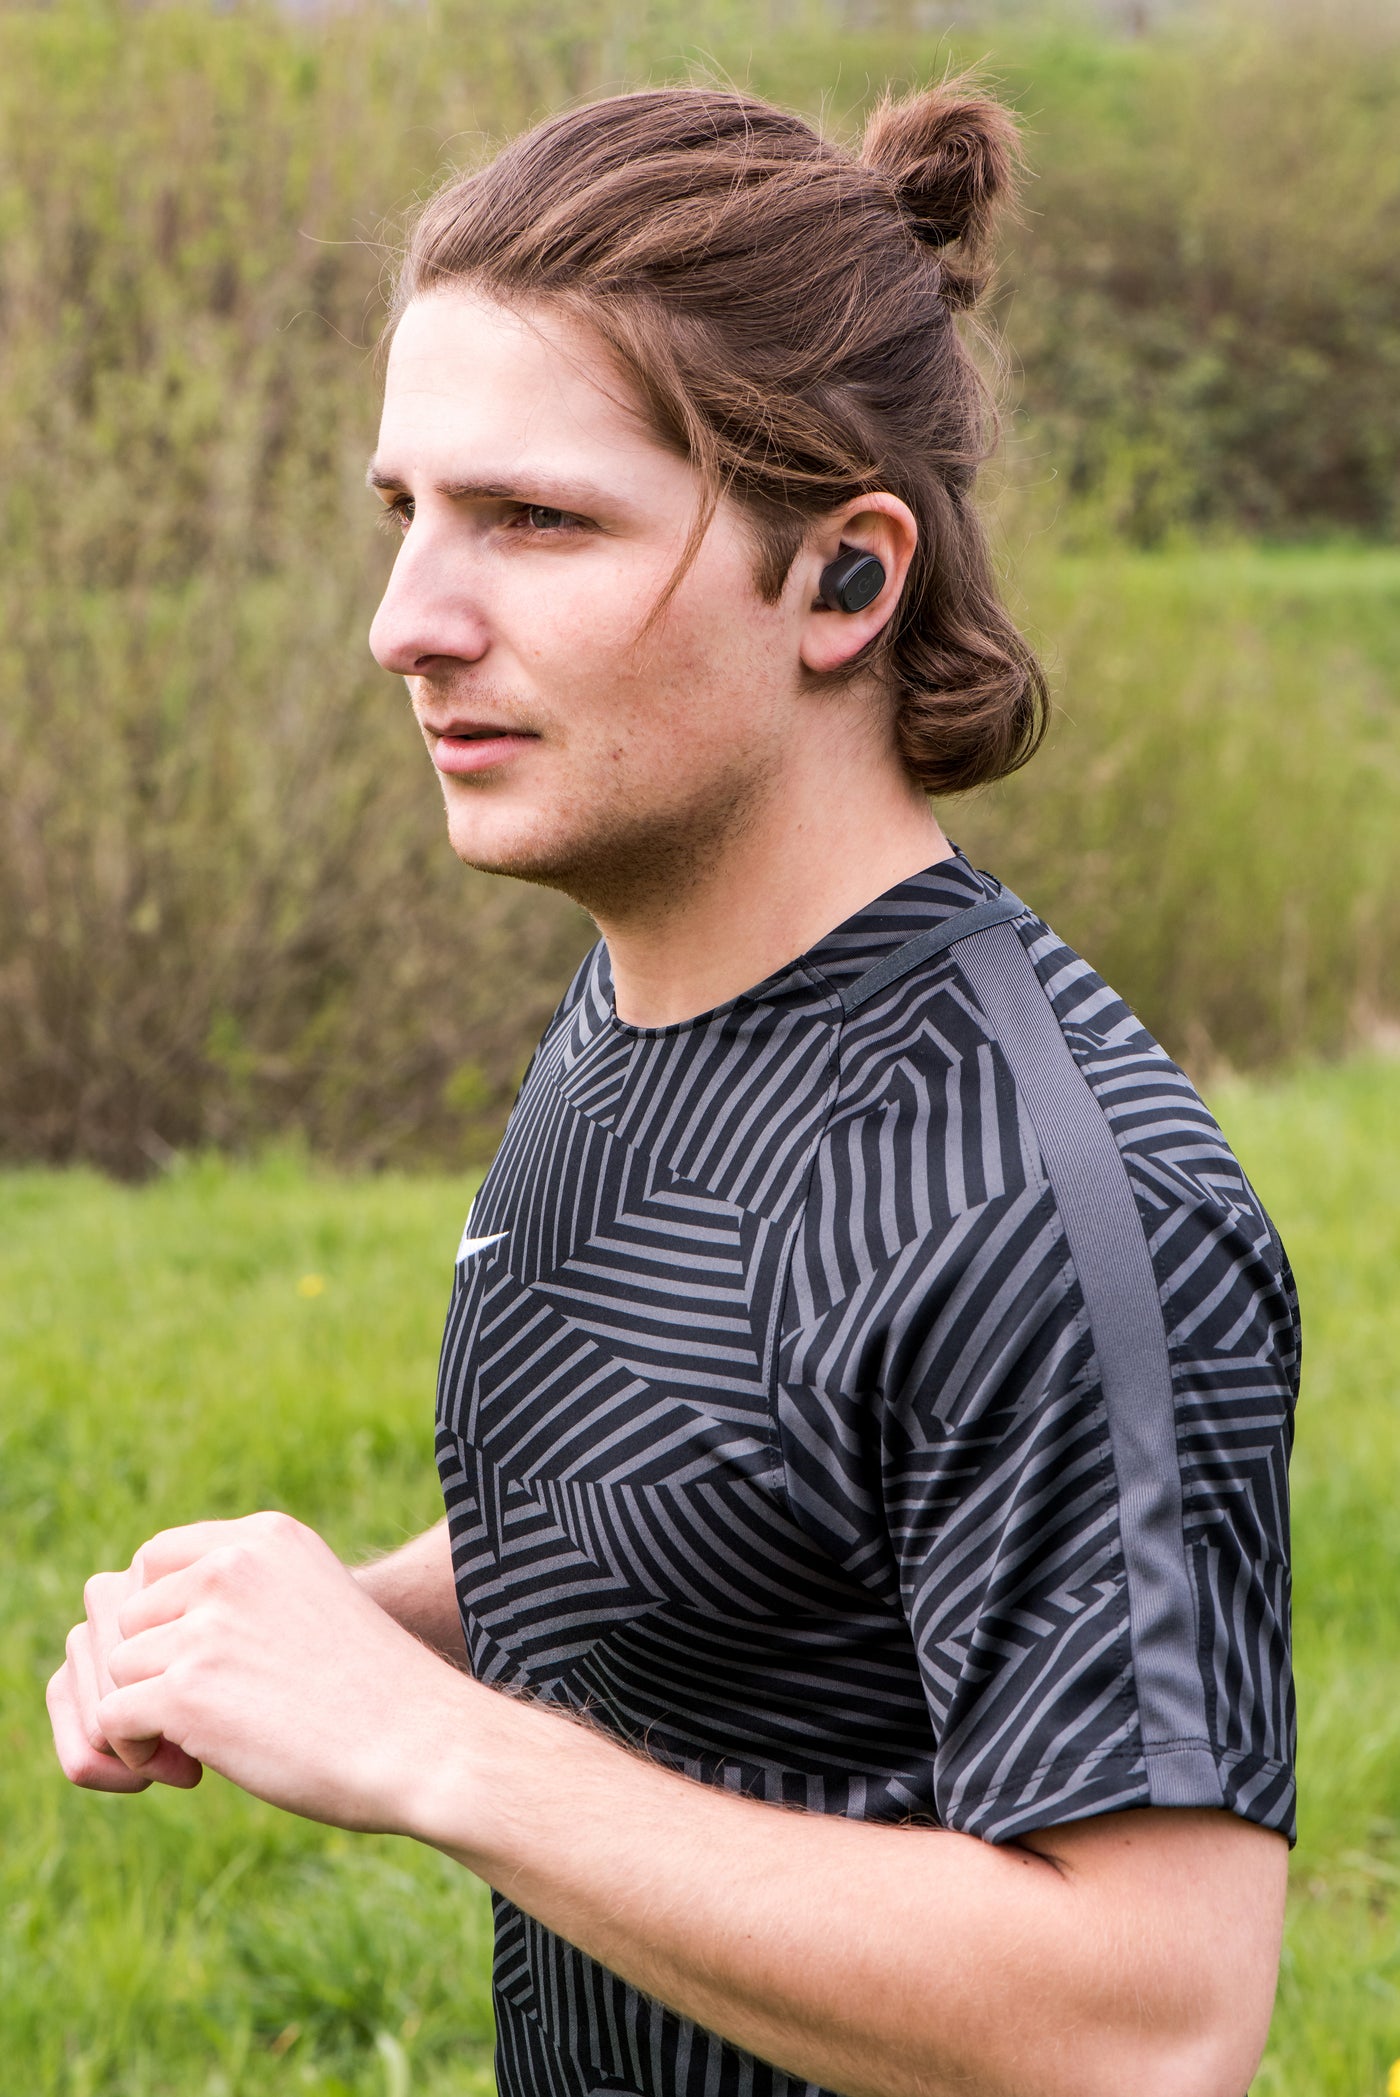 Lenco EPB-440BK - Ecouteurs Bluetooth® intra-auriculaires étanches avec station de chargement - Noir